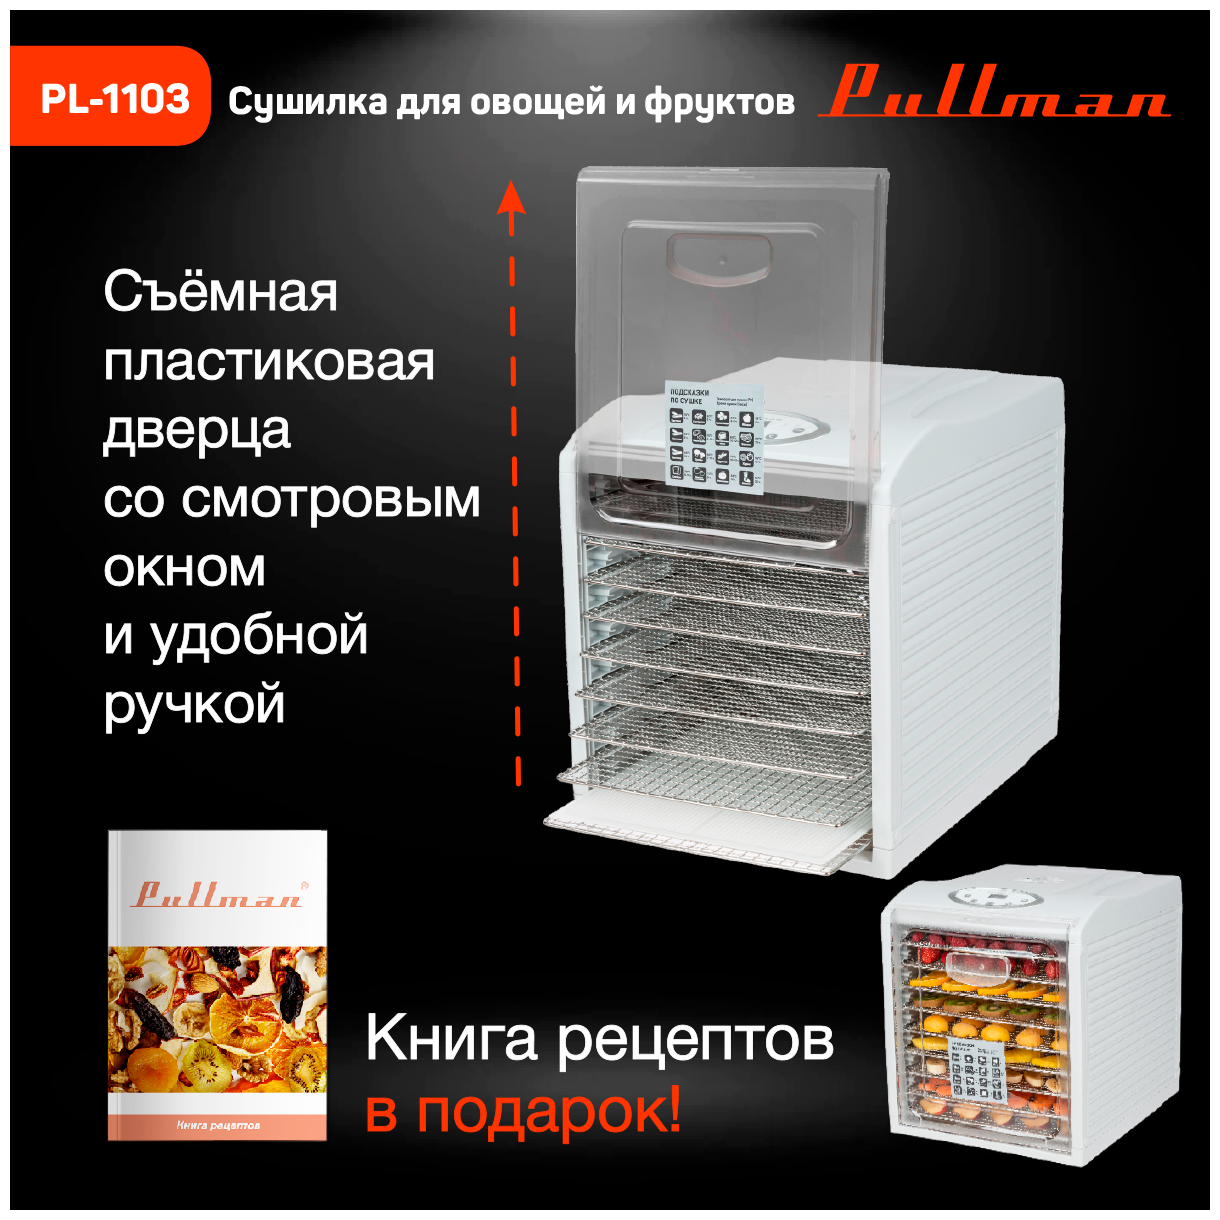 Сушилка для овощей и фруктов Pullman PL-1103